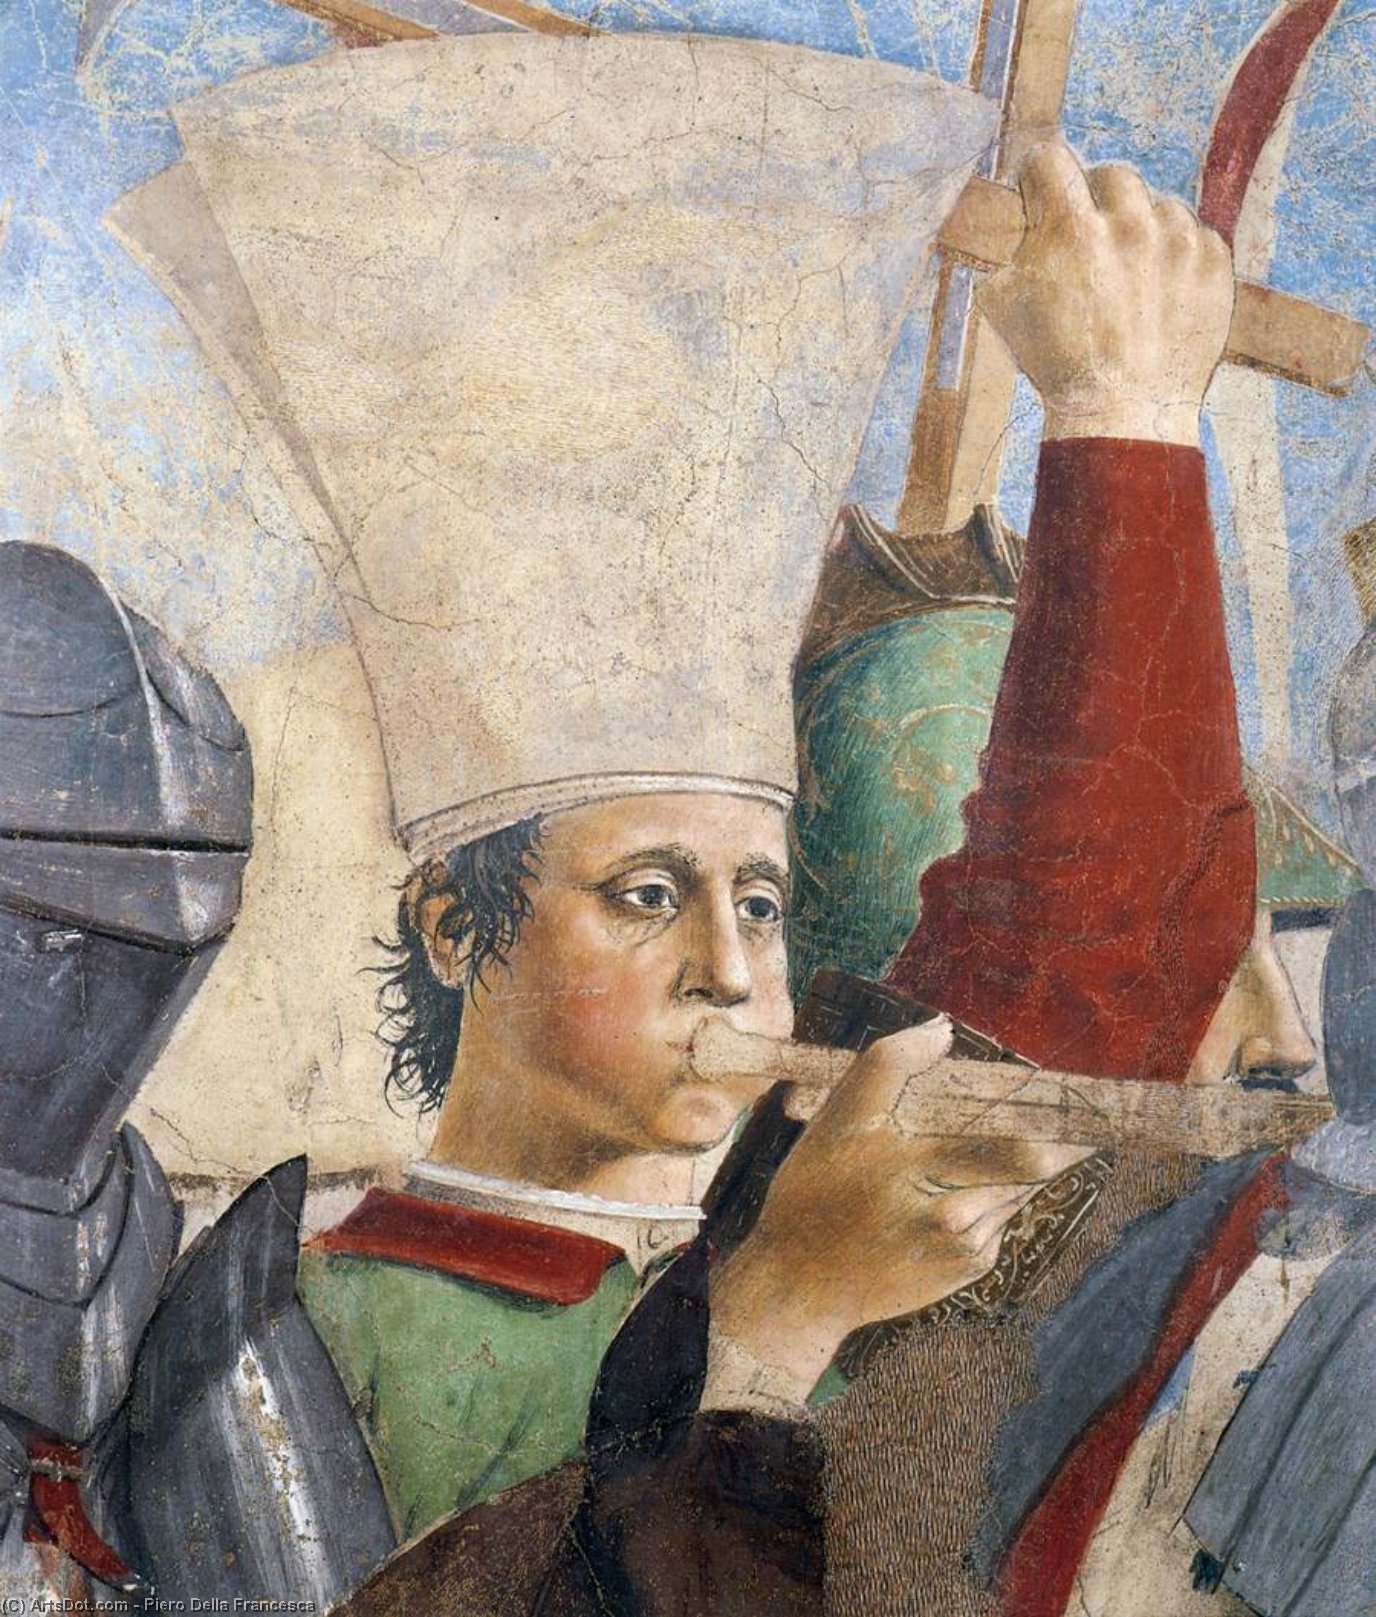 WikiOO.org - Enciklopedija likovnih umjetnosti - Slikarstvo, umjetnička djela Piero Della Francesca - 8. Battle between Heraclius and Chosroes (detail)